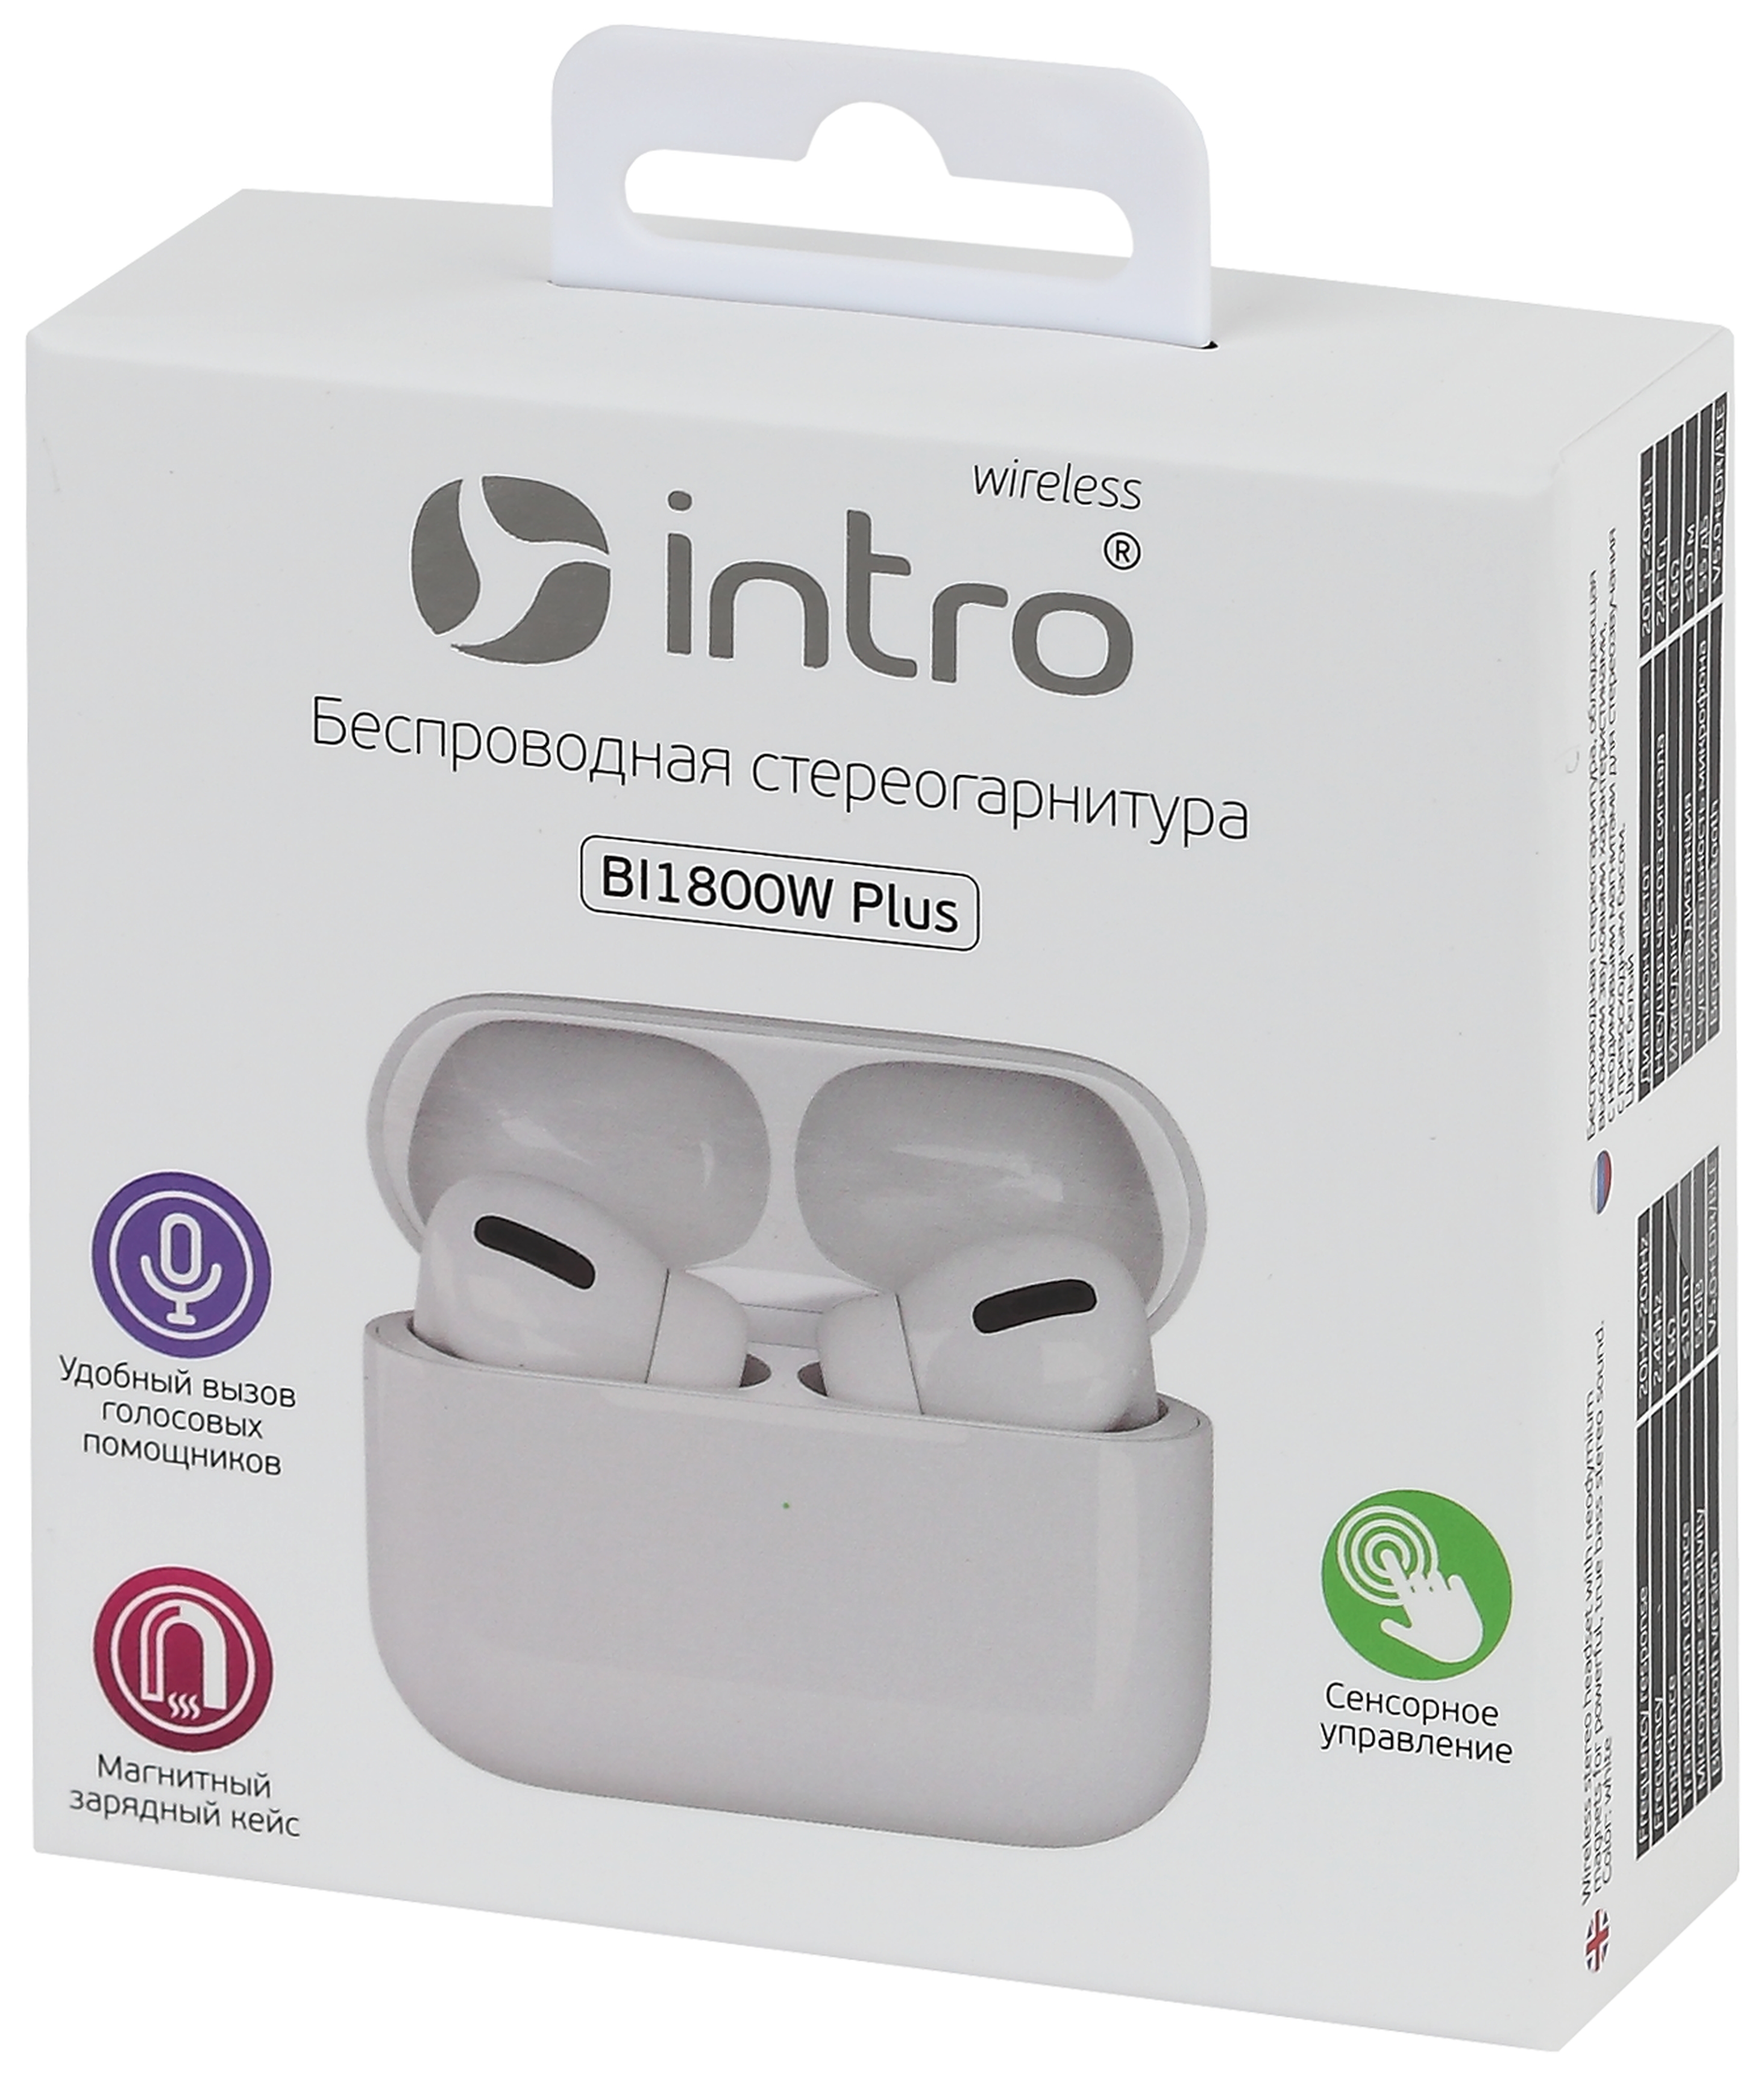 Intro BI1800W Plus Bluetooth-гарнитура сенсорная ultra slim, с зар. кейсом, белая (120/1440)